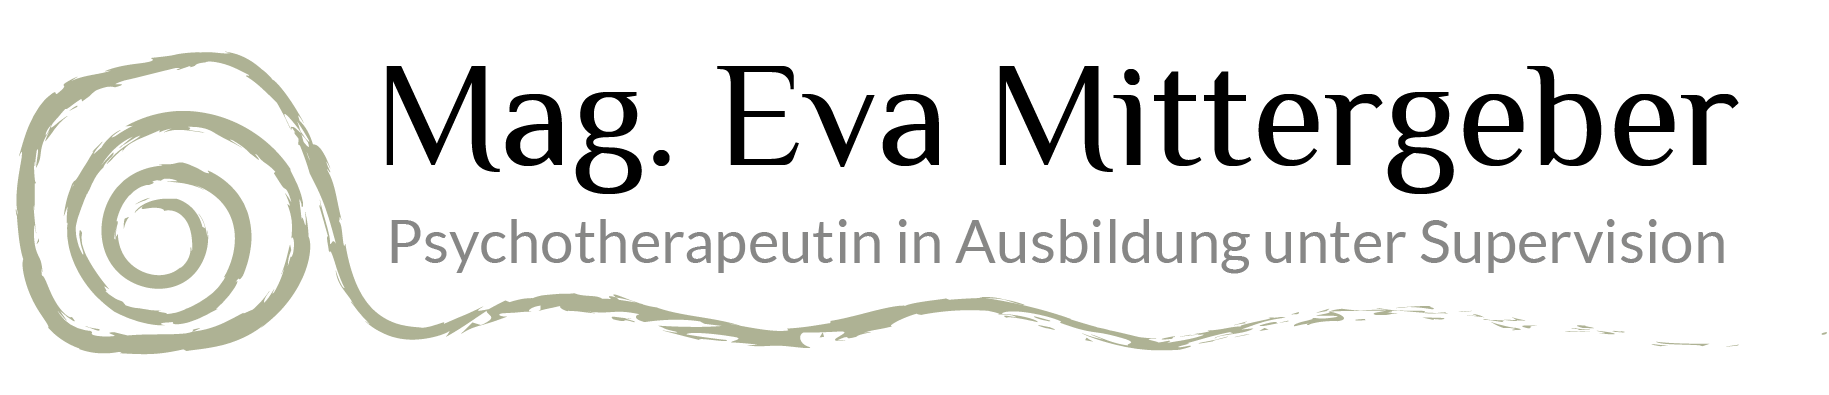 Mag. Eva Mittergeber - Psychotherapeutin in Ausbildung unter Supervision